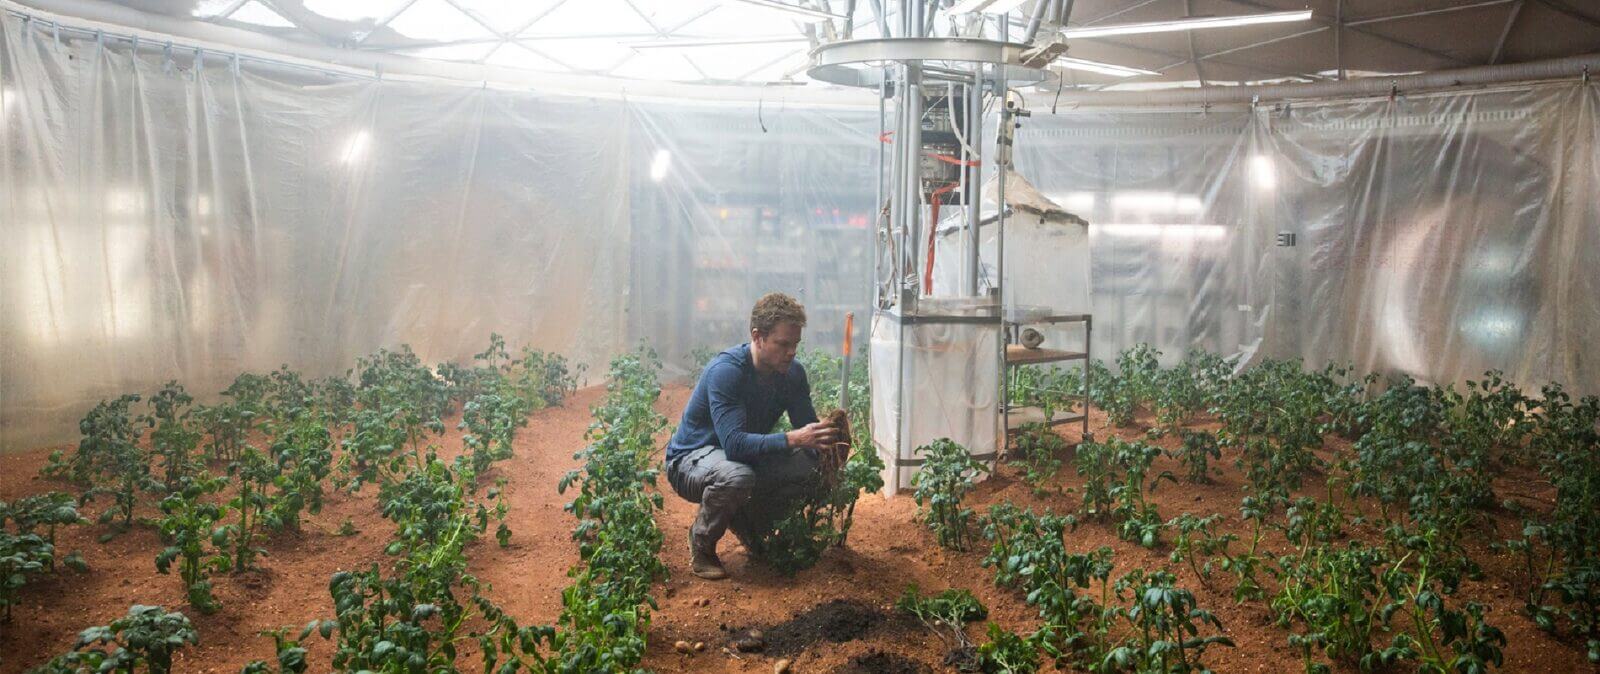 模擬火星環境與土壤 科學家成功種出馬鈴薯